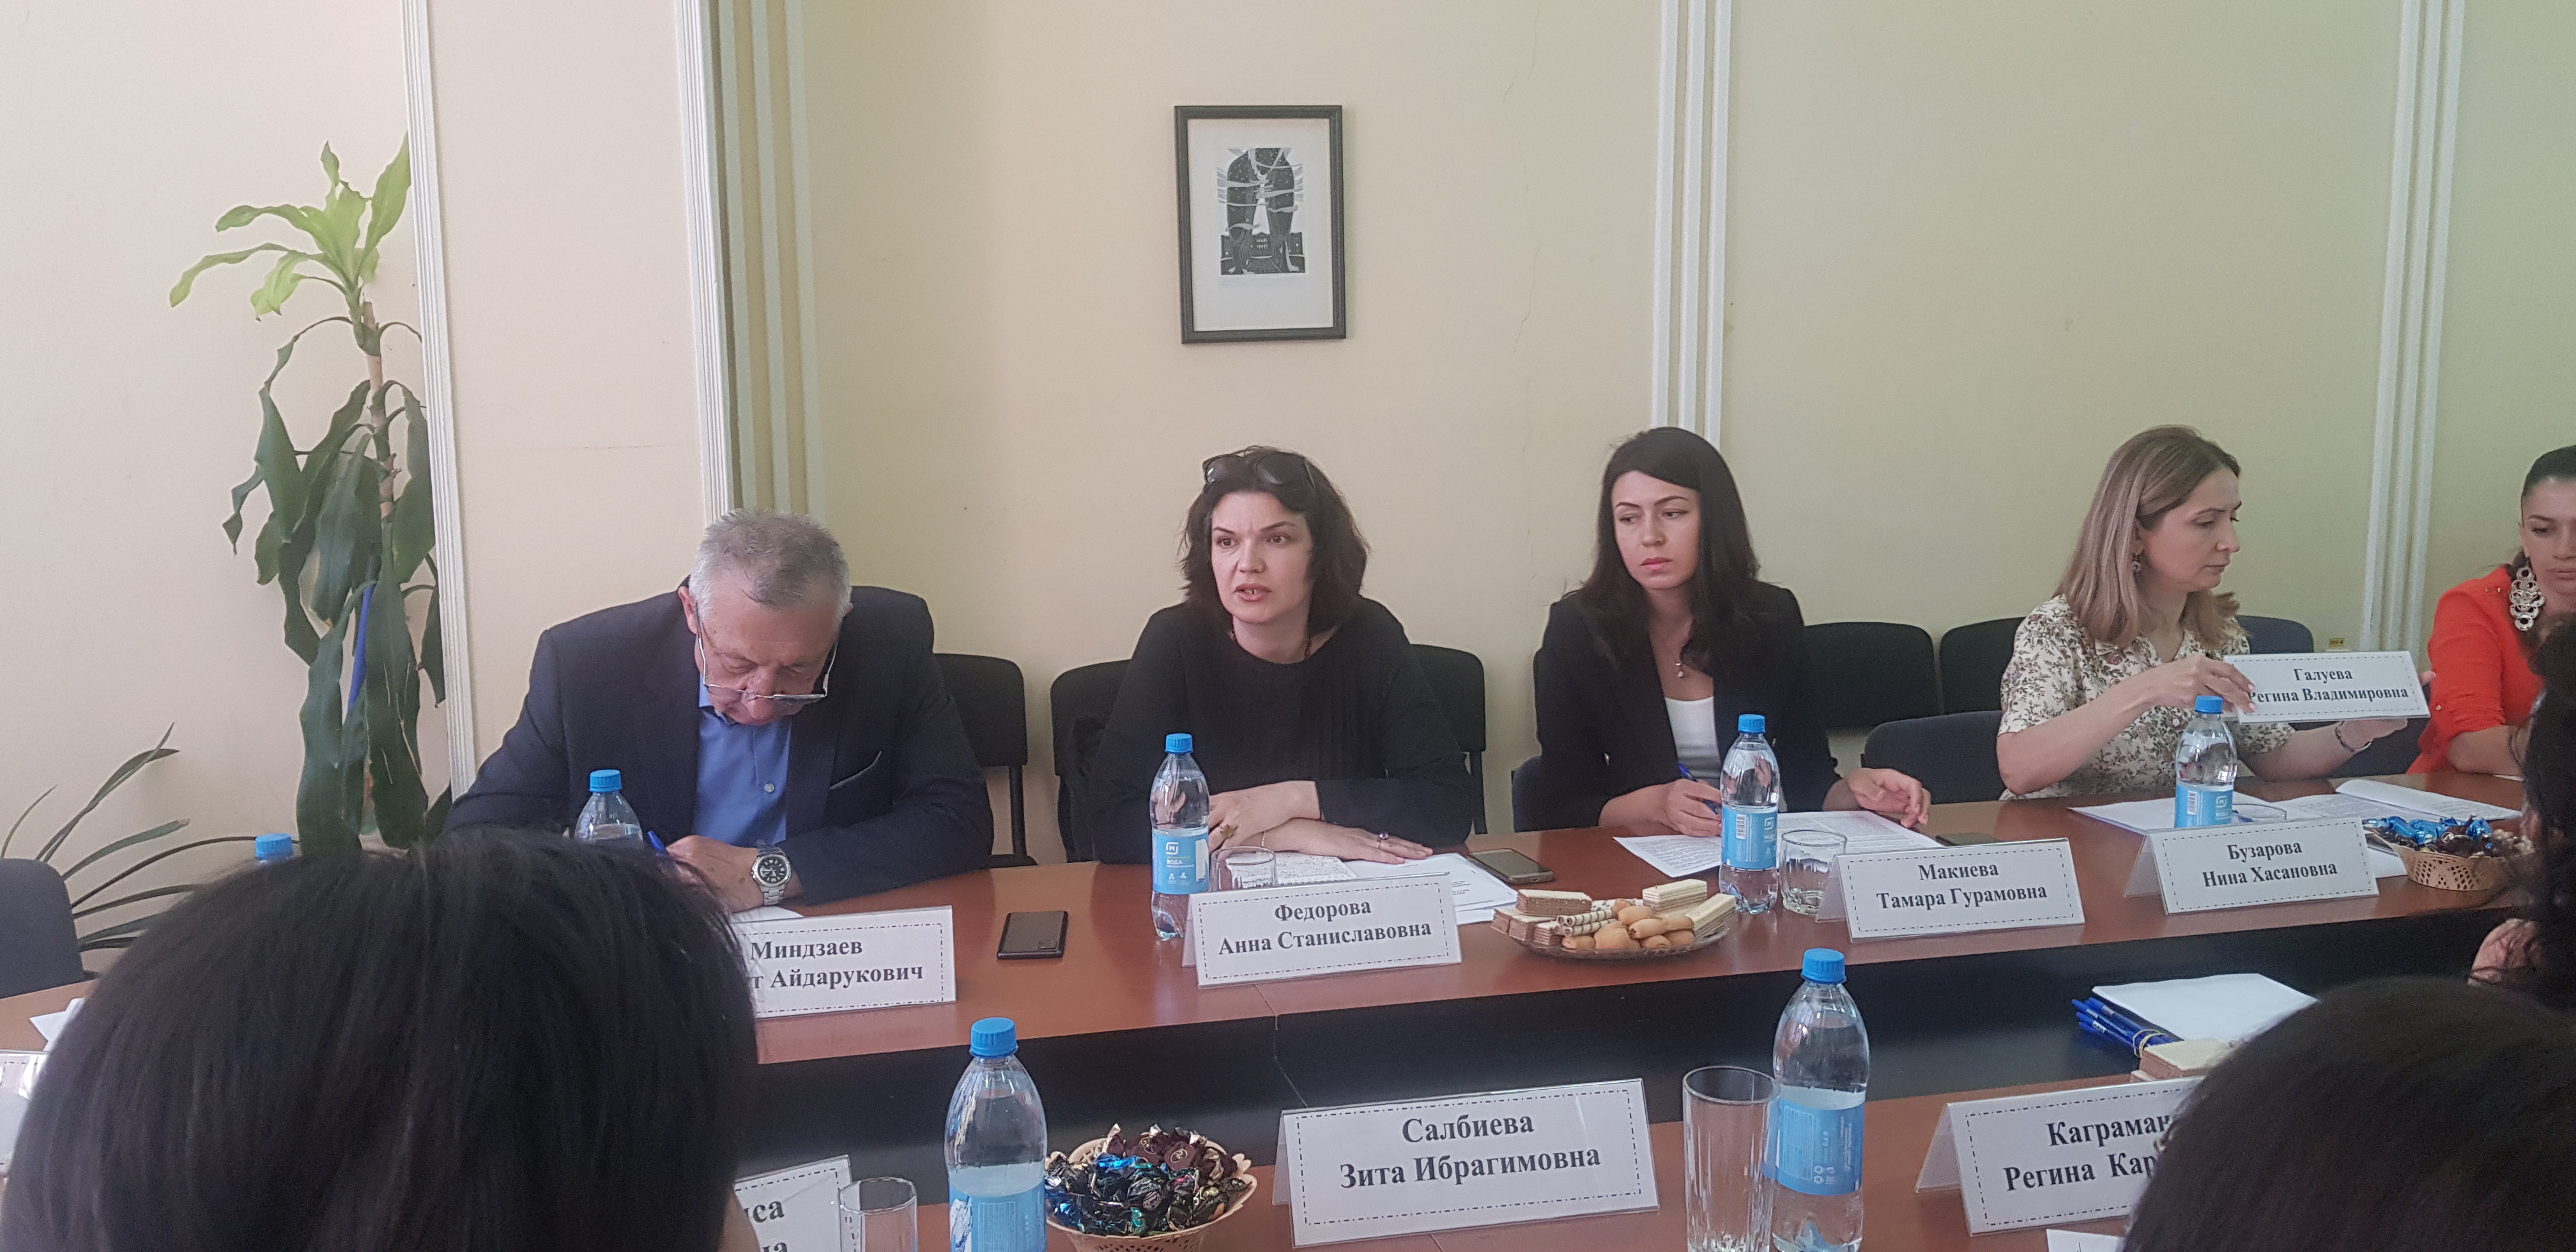 Во Владикавказском институте управления состоялся круглый стол на тему« Проблемы реализации права граждан на медицинское обслуживание и медицинскую помощь»